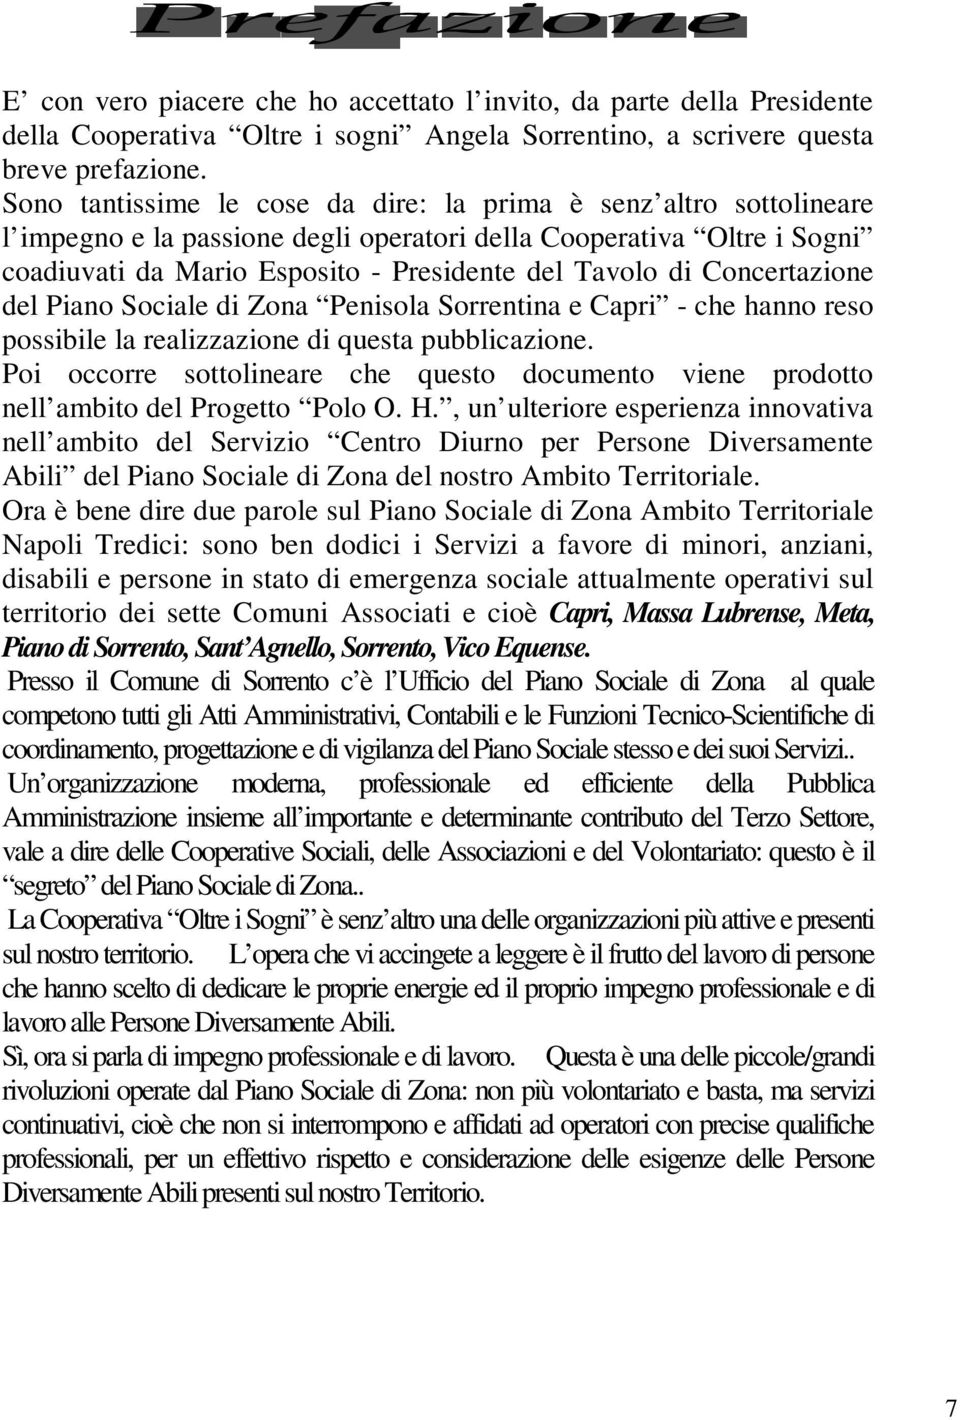 Concertazione del Piano Sociale di Zona Penisola Sorrentina e Capri - che hanno reso possibile la realizzazione di questa pubblicazione.